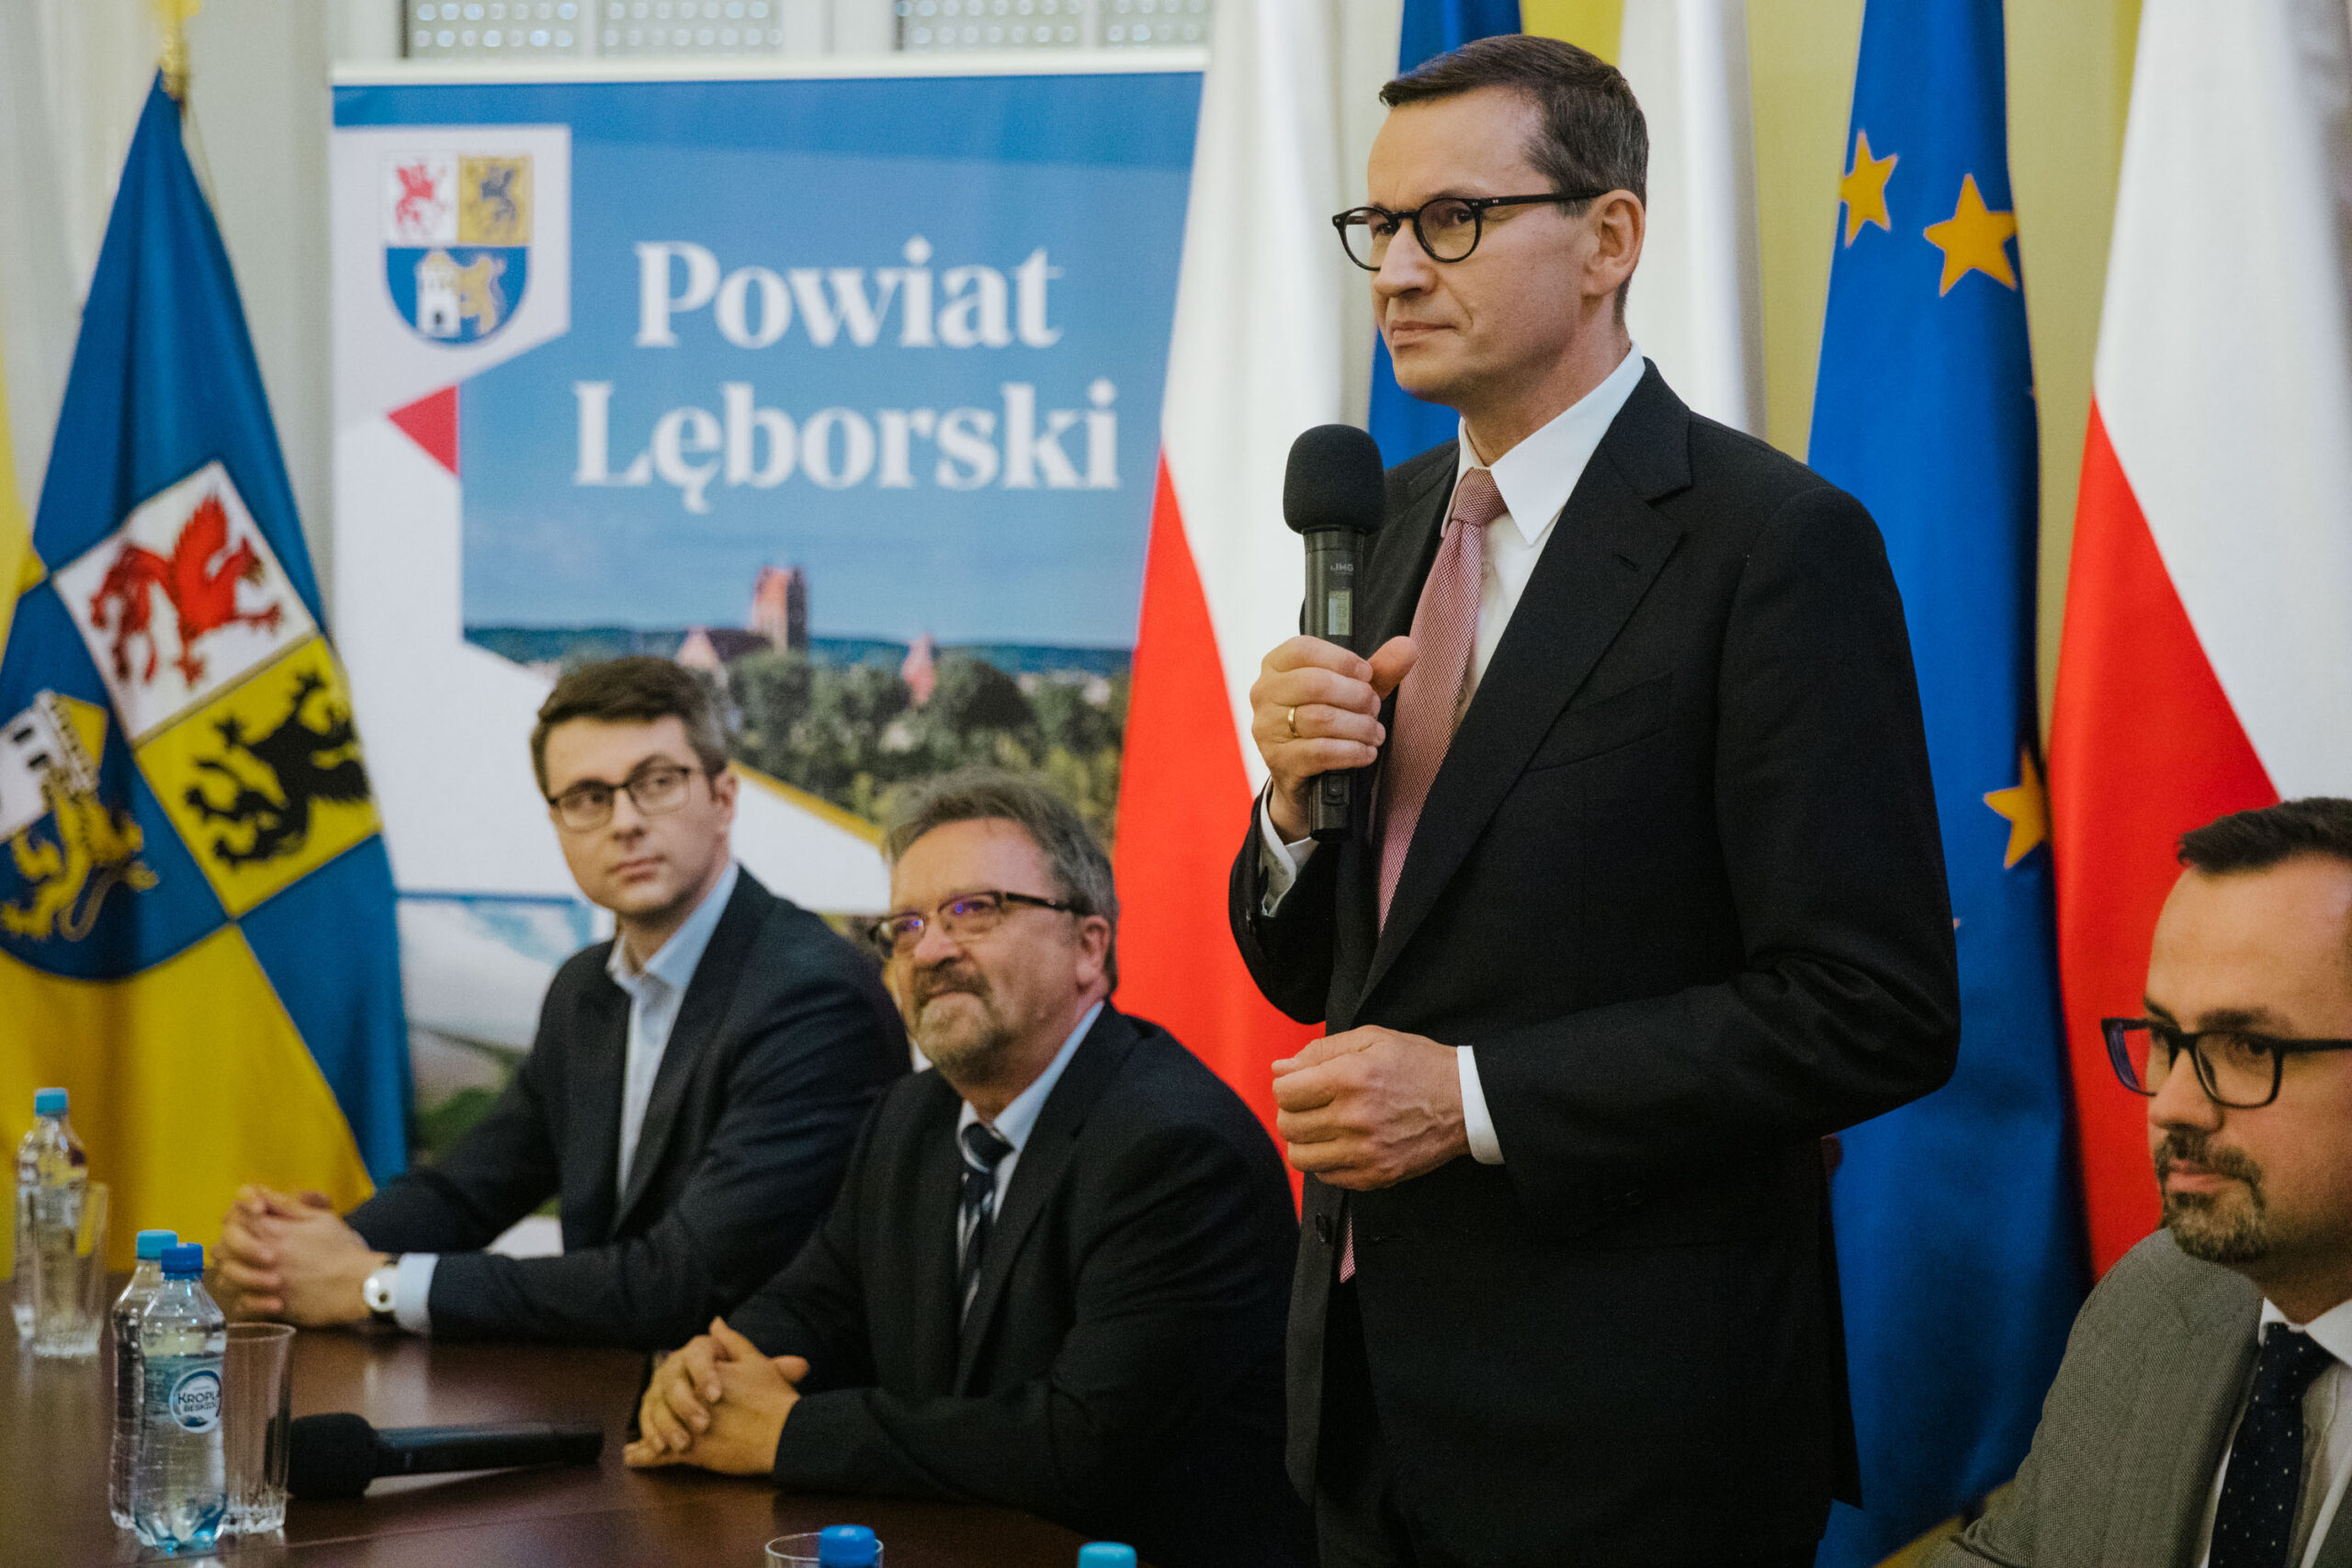 W siedzibie starostwa powiatowego w Lęborku poseł Piotr Mueller towarzyszył premierowi Mateuszowi Morawieckiemu podczas spotkania z samorządowcami powiatu lęborskiego i bytowskiego.